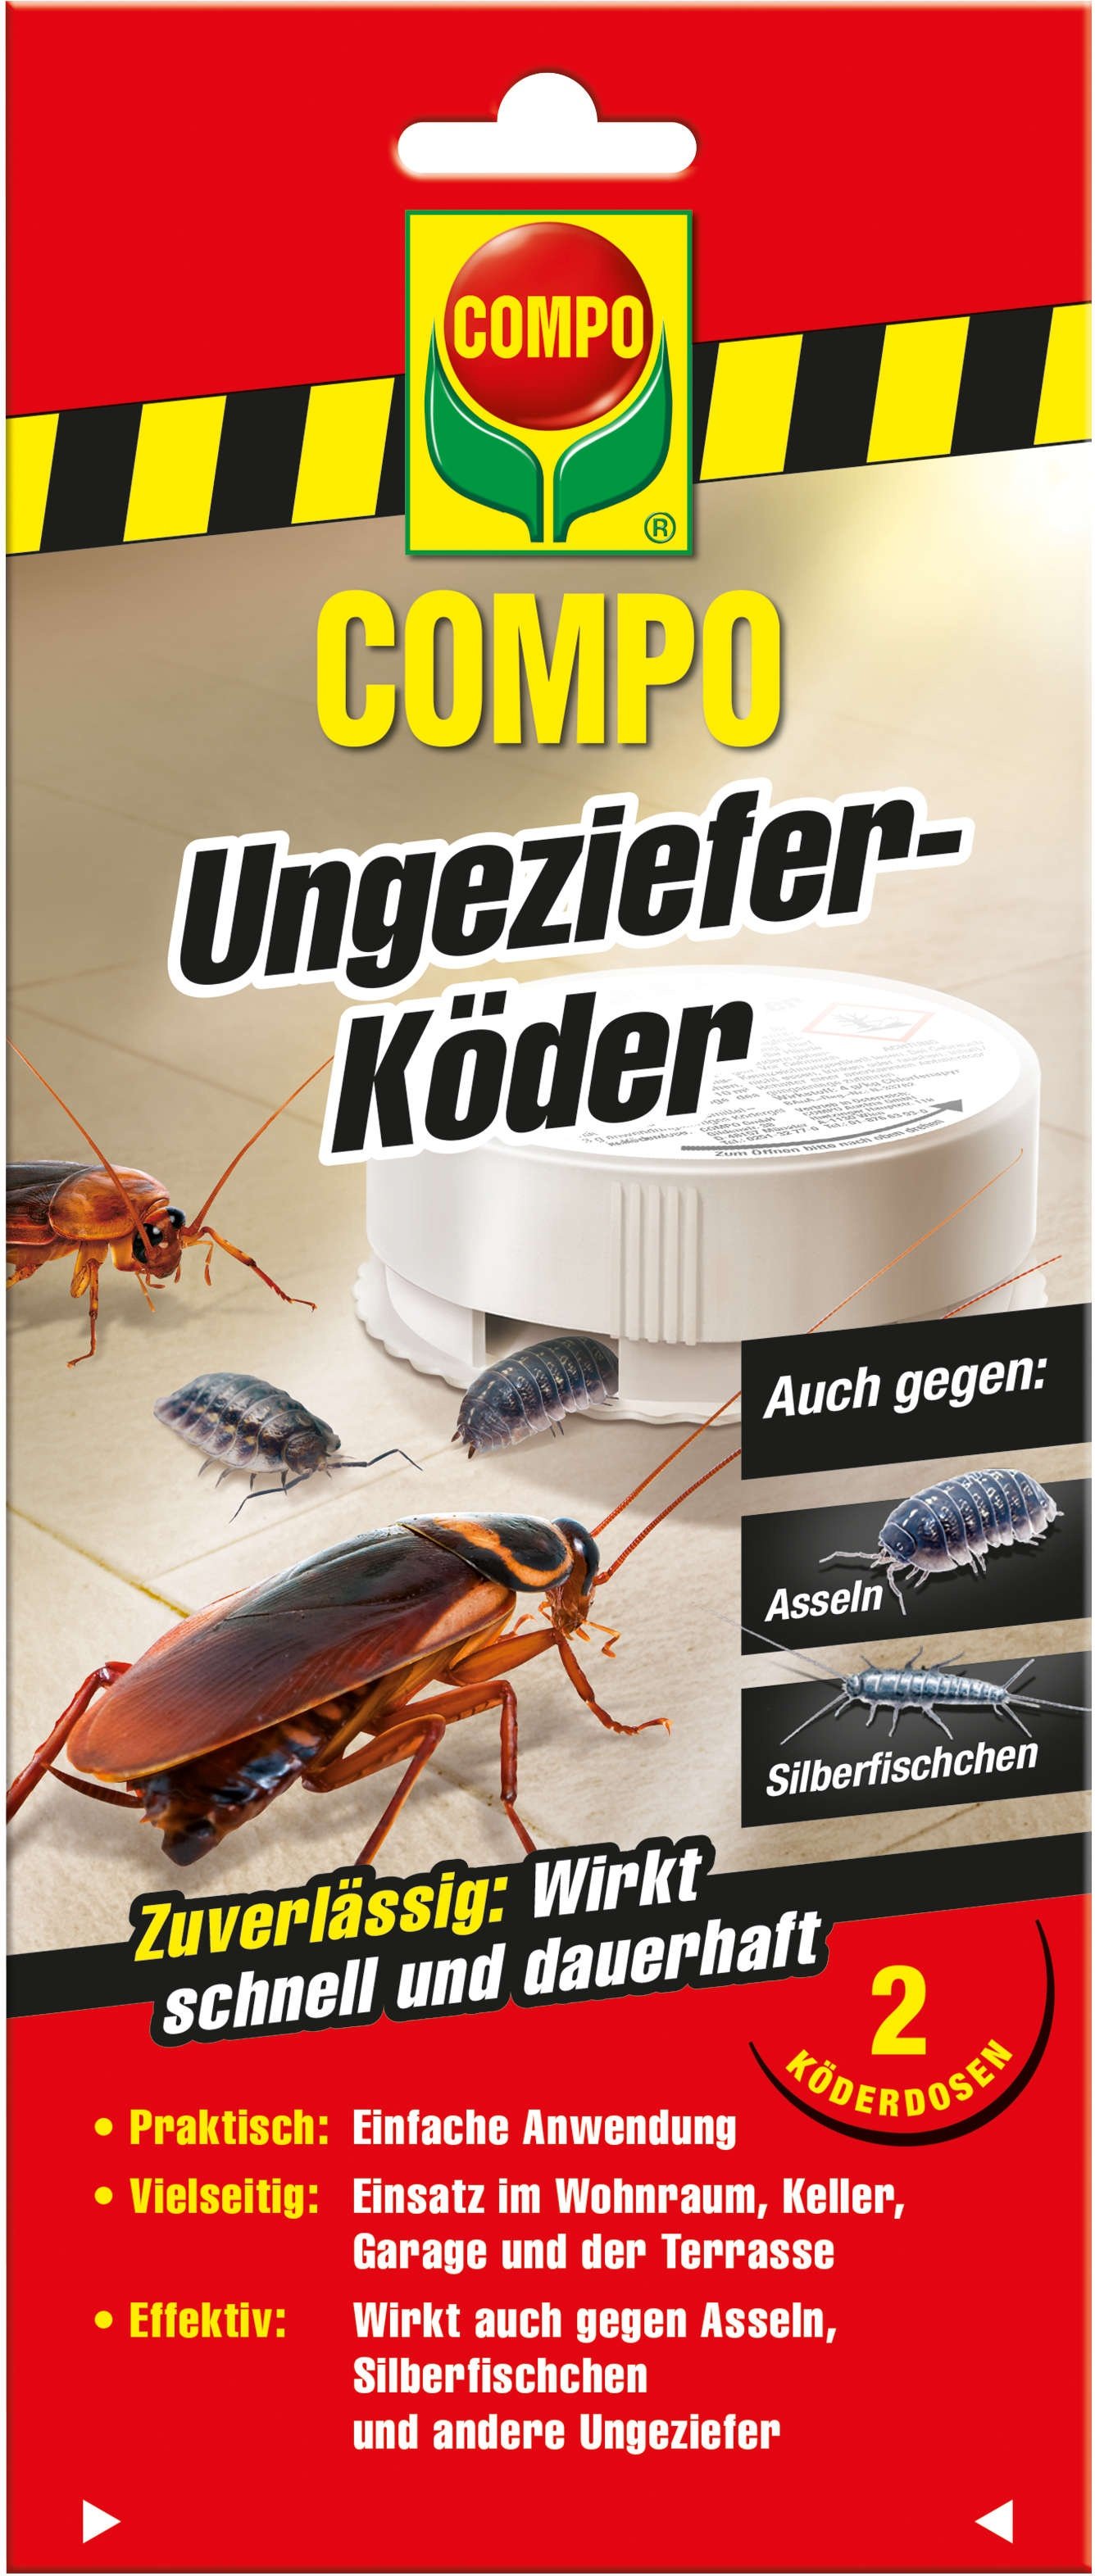 COMPO Ungeziefer-Köder